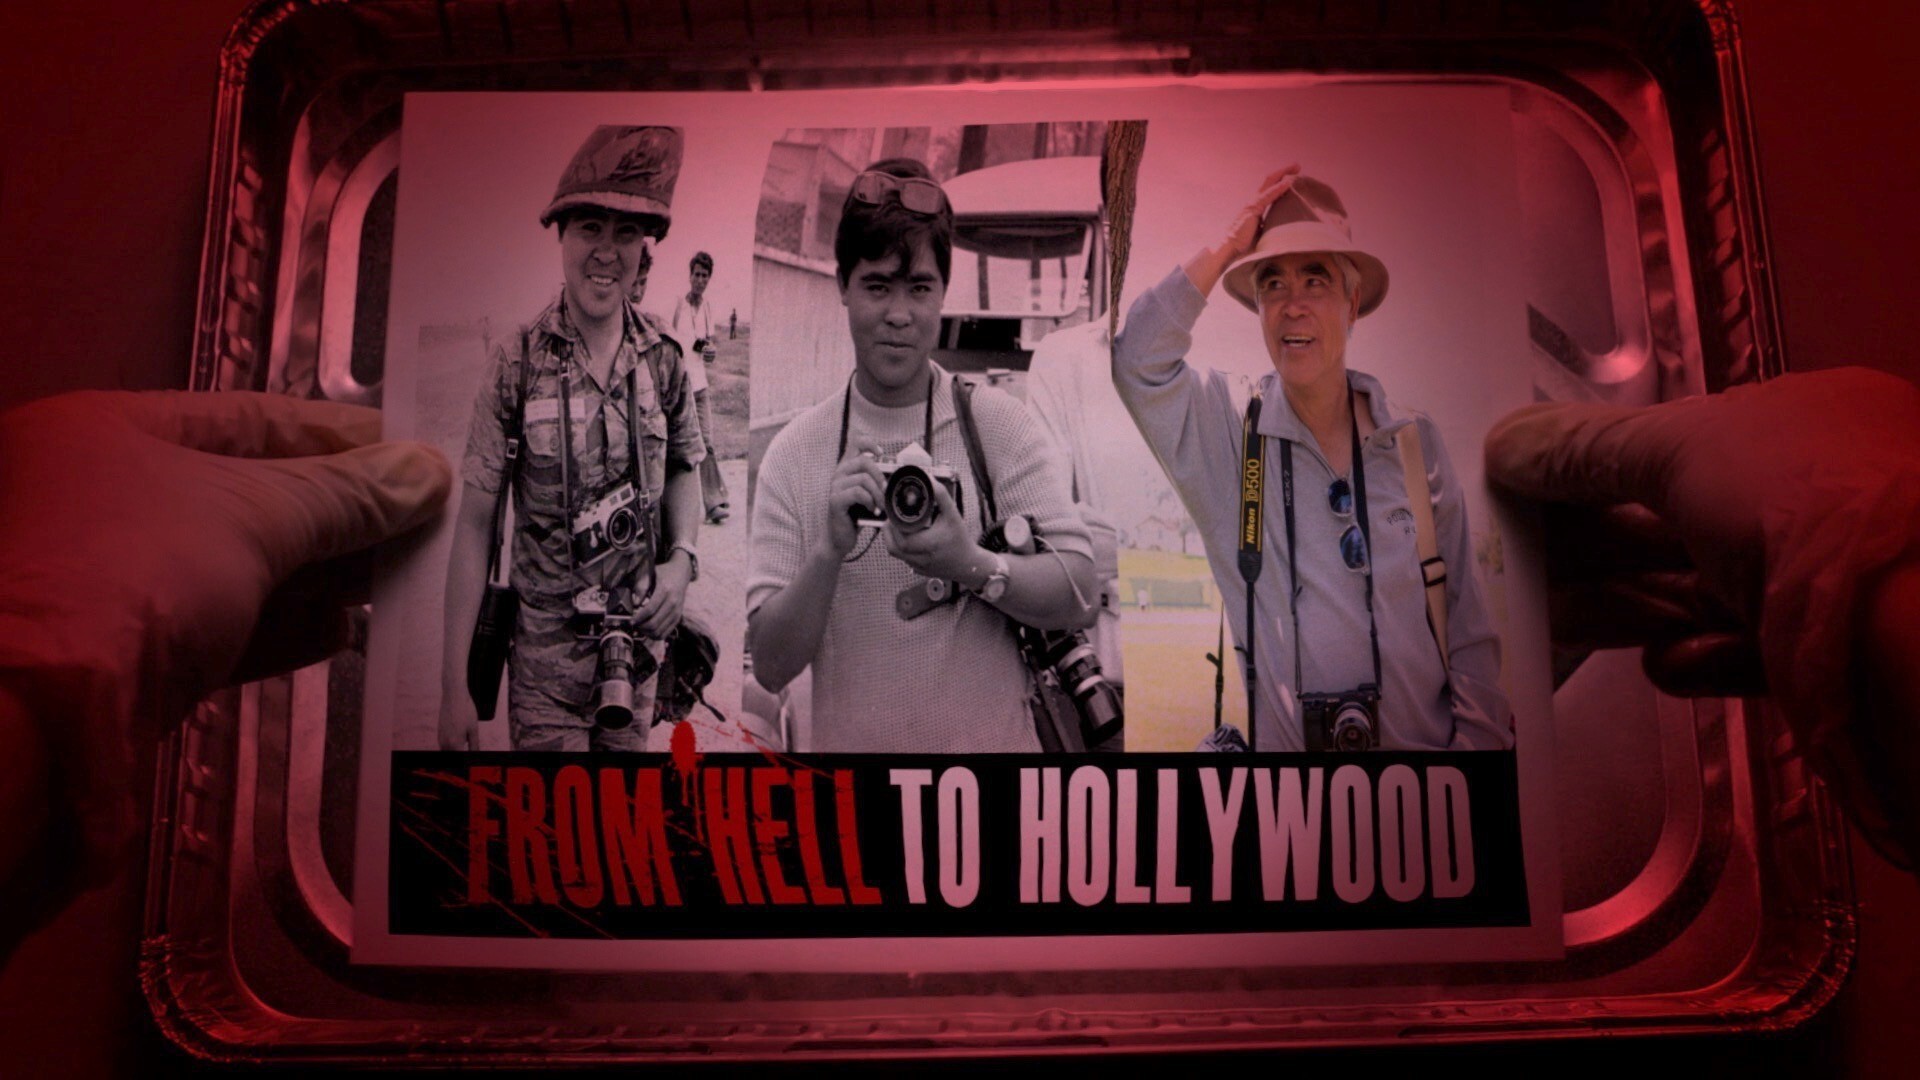 ჯოჯოხეთიდან ჰოლივუდამდე / From Hell to Hollywood